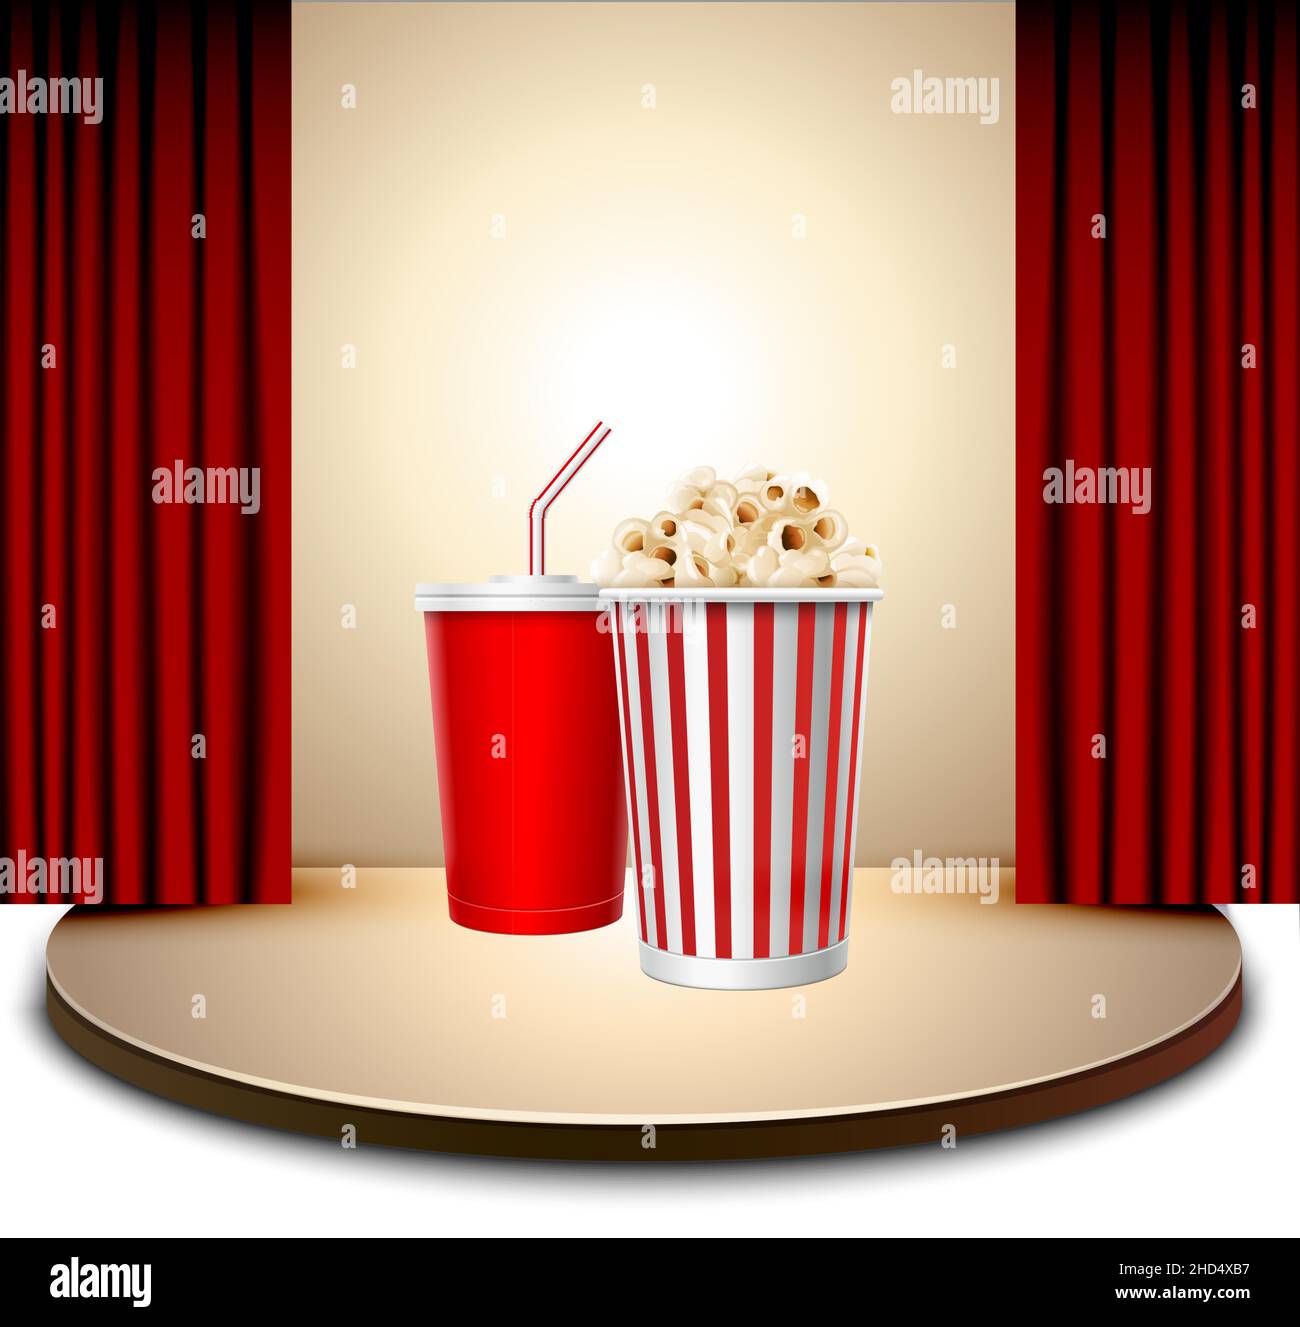 Rappresentazione del fast food su una scena cinematografica a cortina rossa Illustrazione Vettoriale